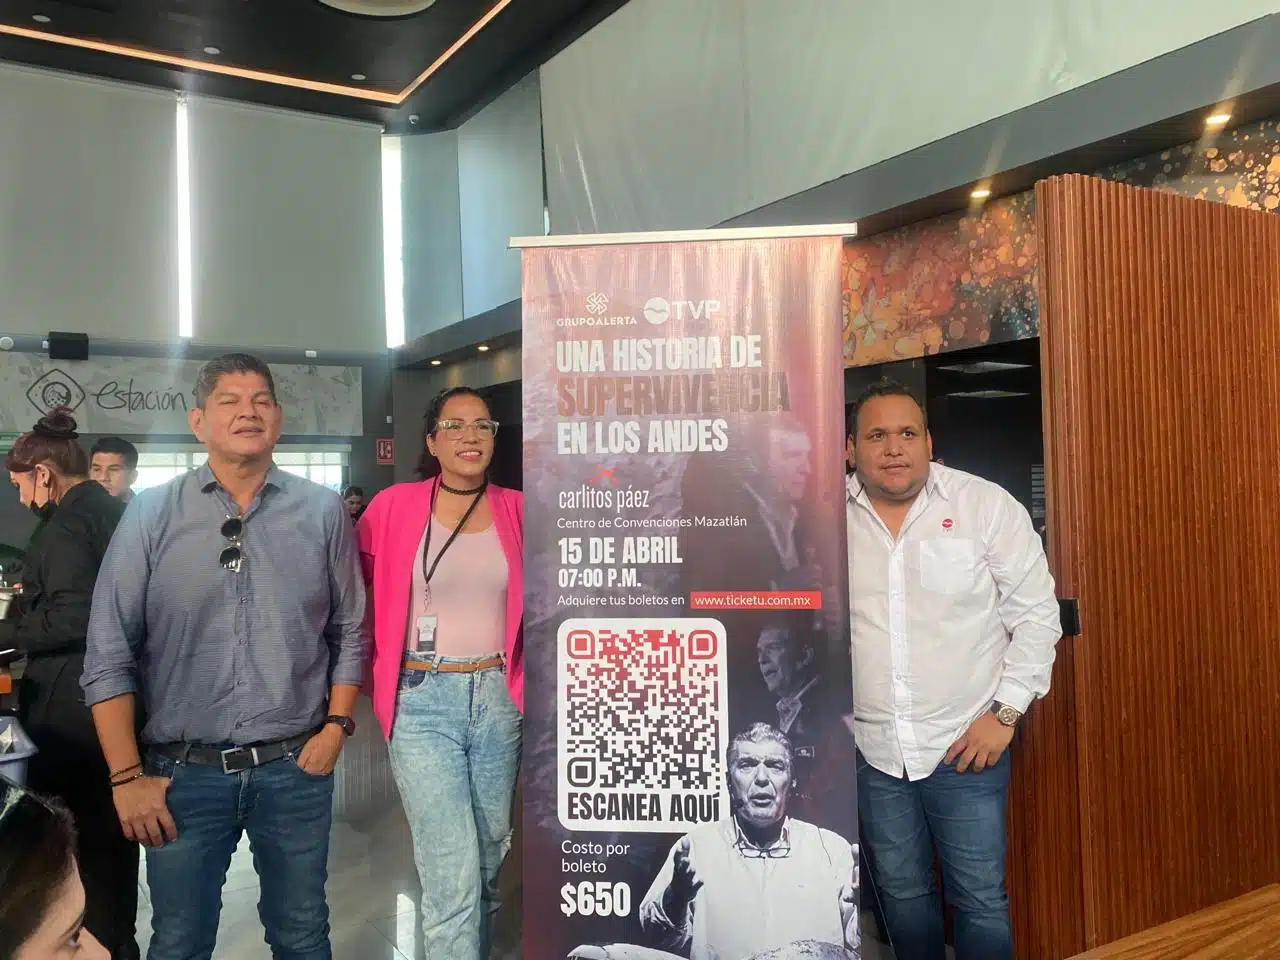 Cartel de publicidad de la conferencia “Una historia de supervivencia en los Andes” en Mazatlán